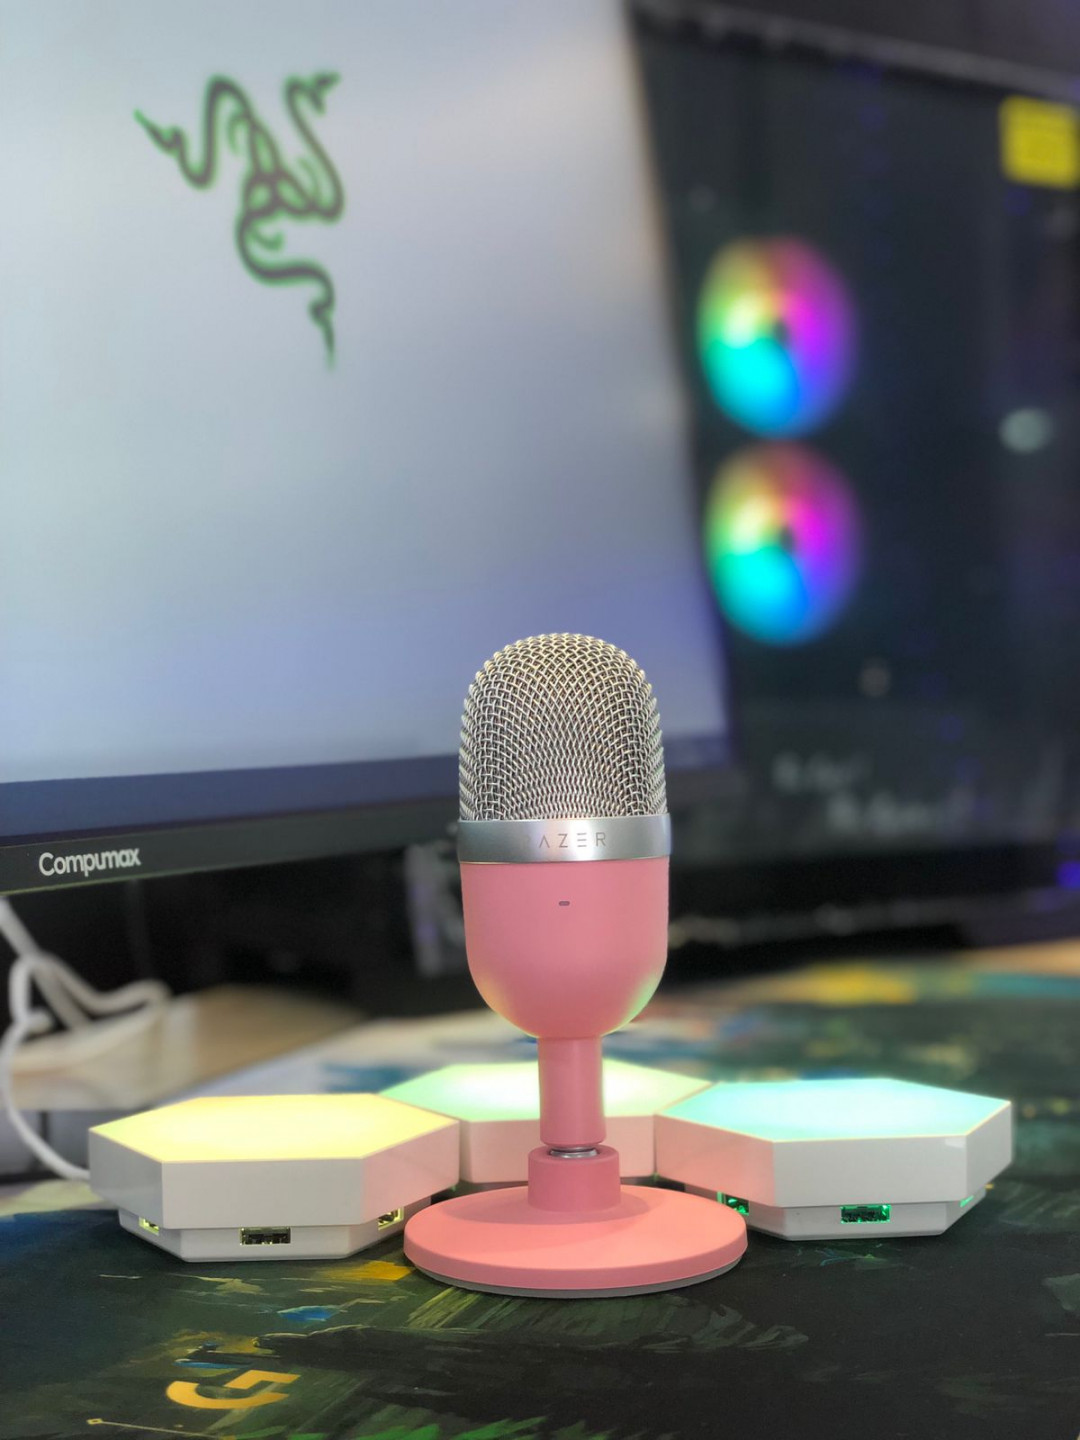 Micrófono RAZER SEIREN mini ultra compact condenser rosado